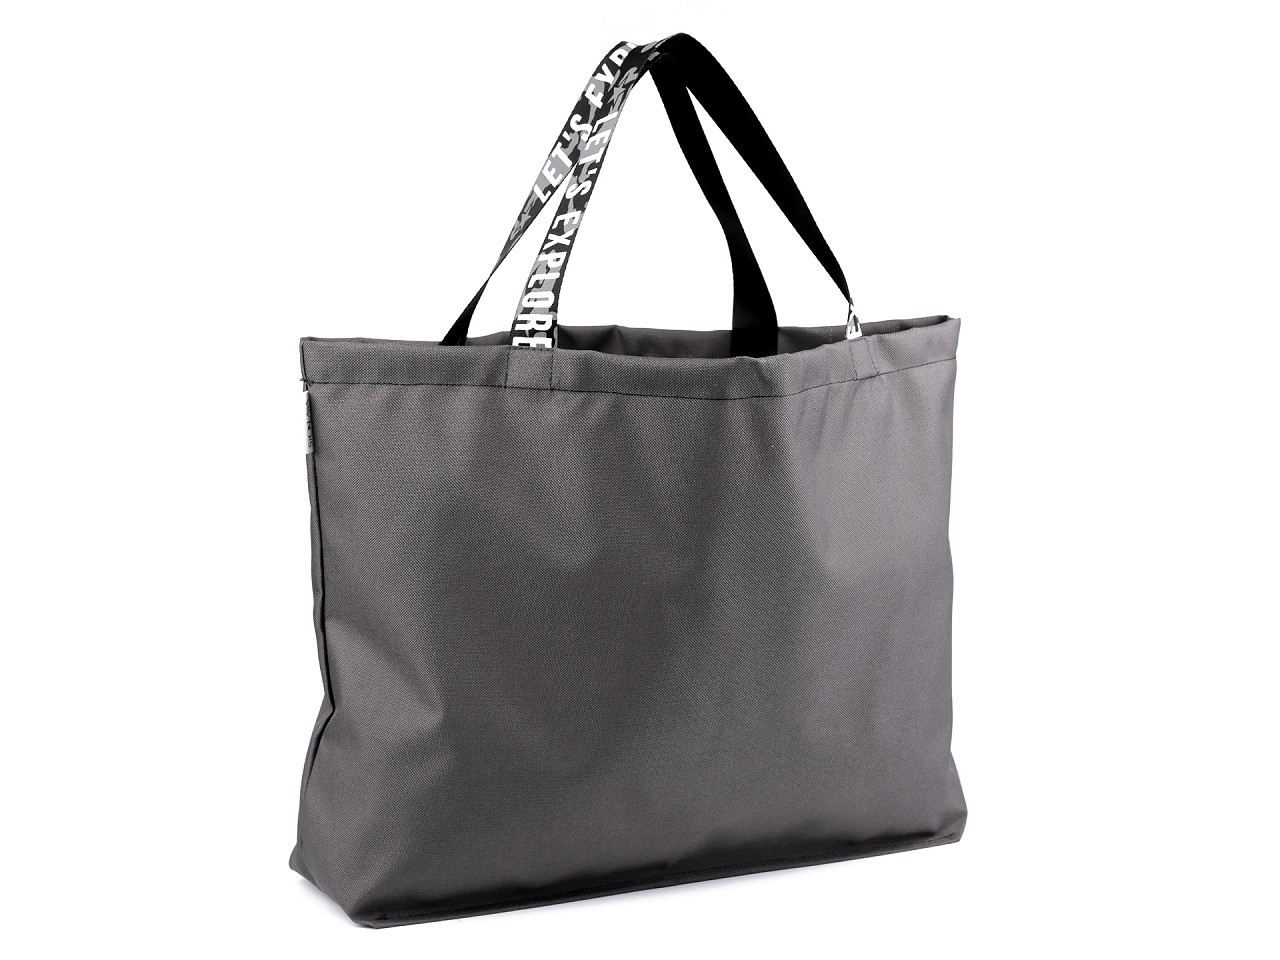 Pevná nákupní taška, barva 3 šedá